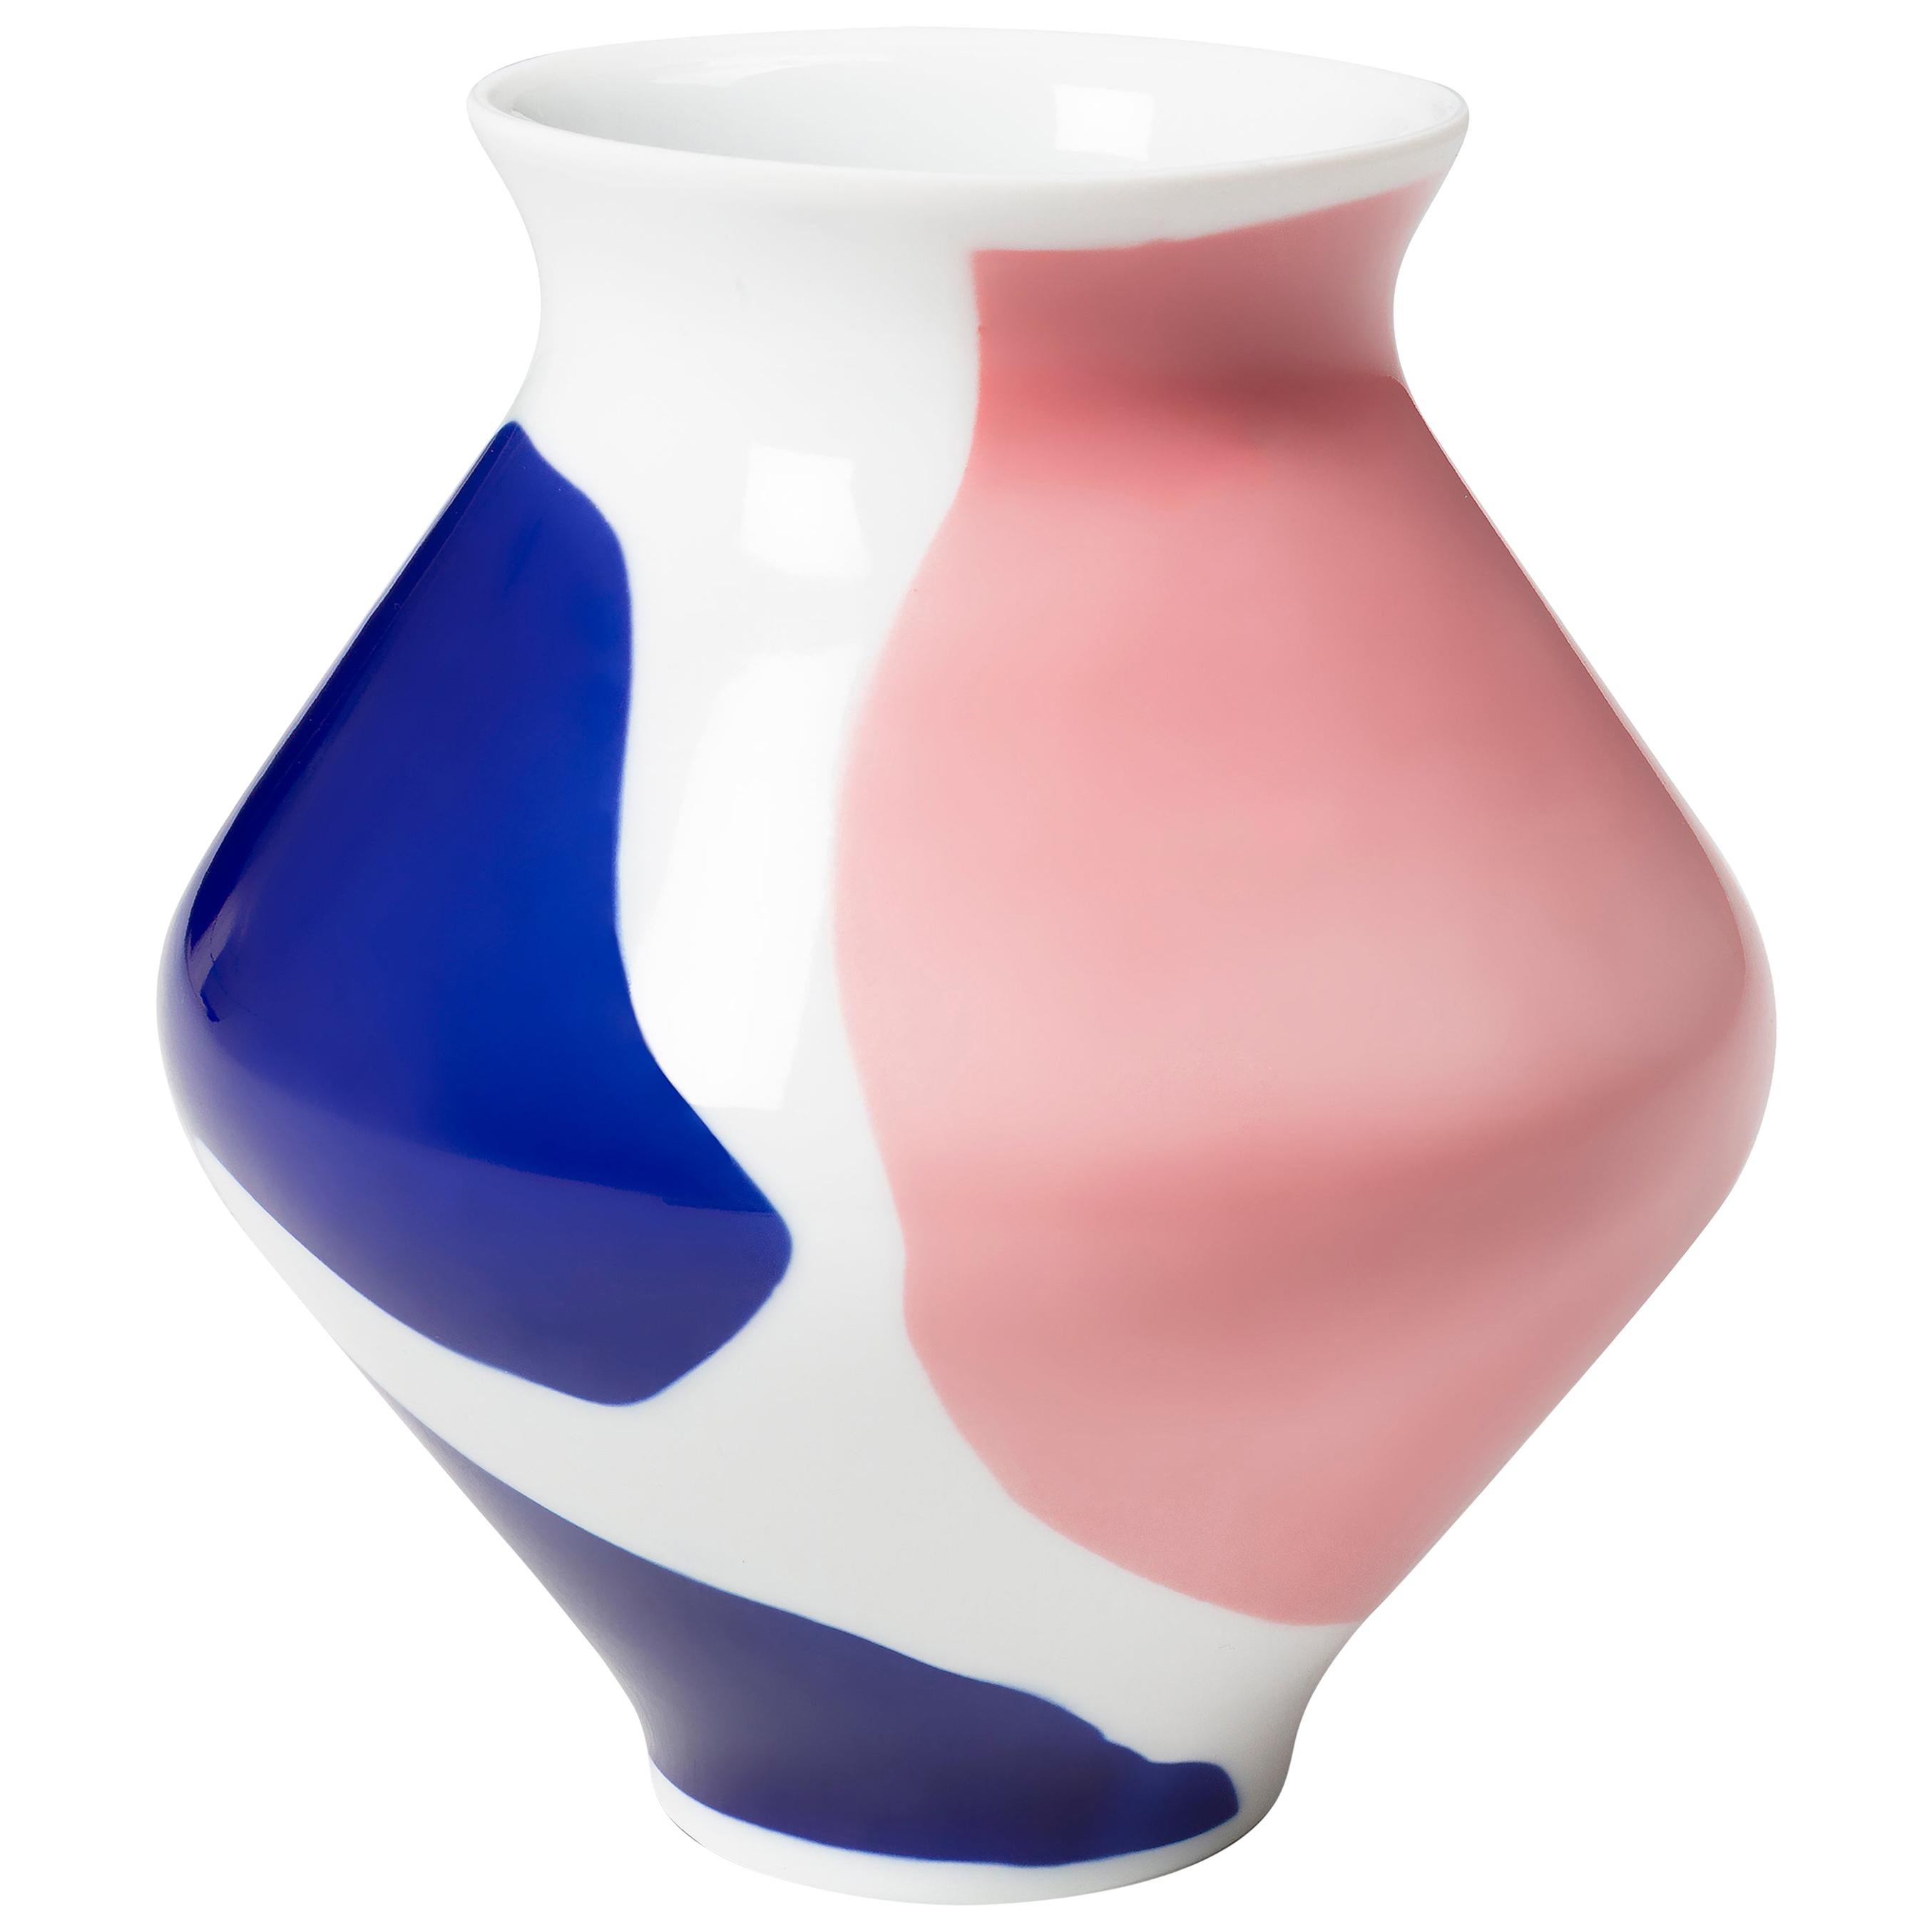 Viso Porcelain Vase 0302 For Sale